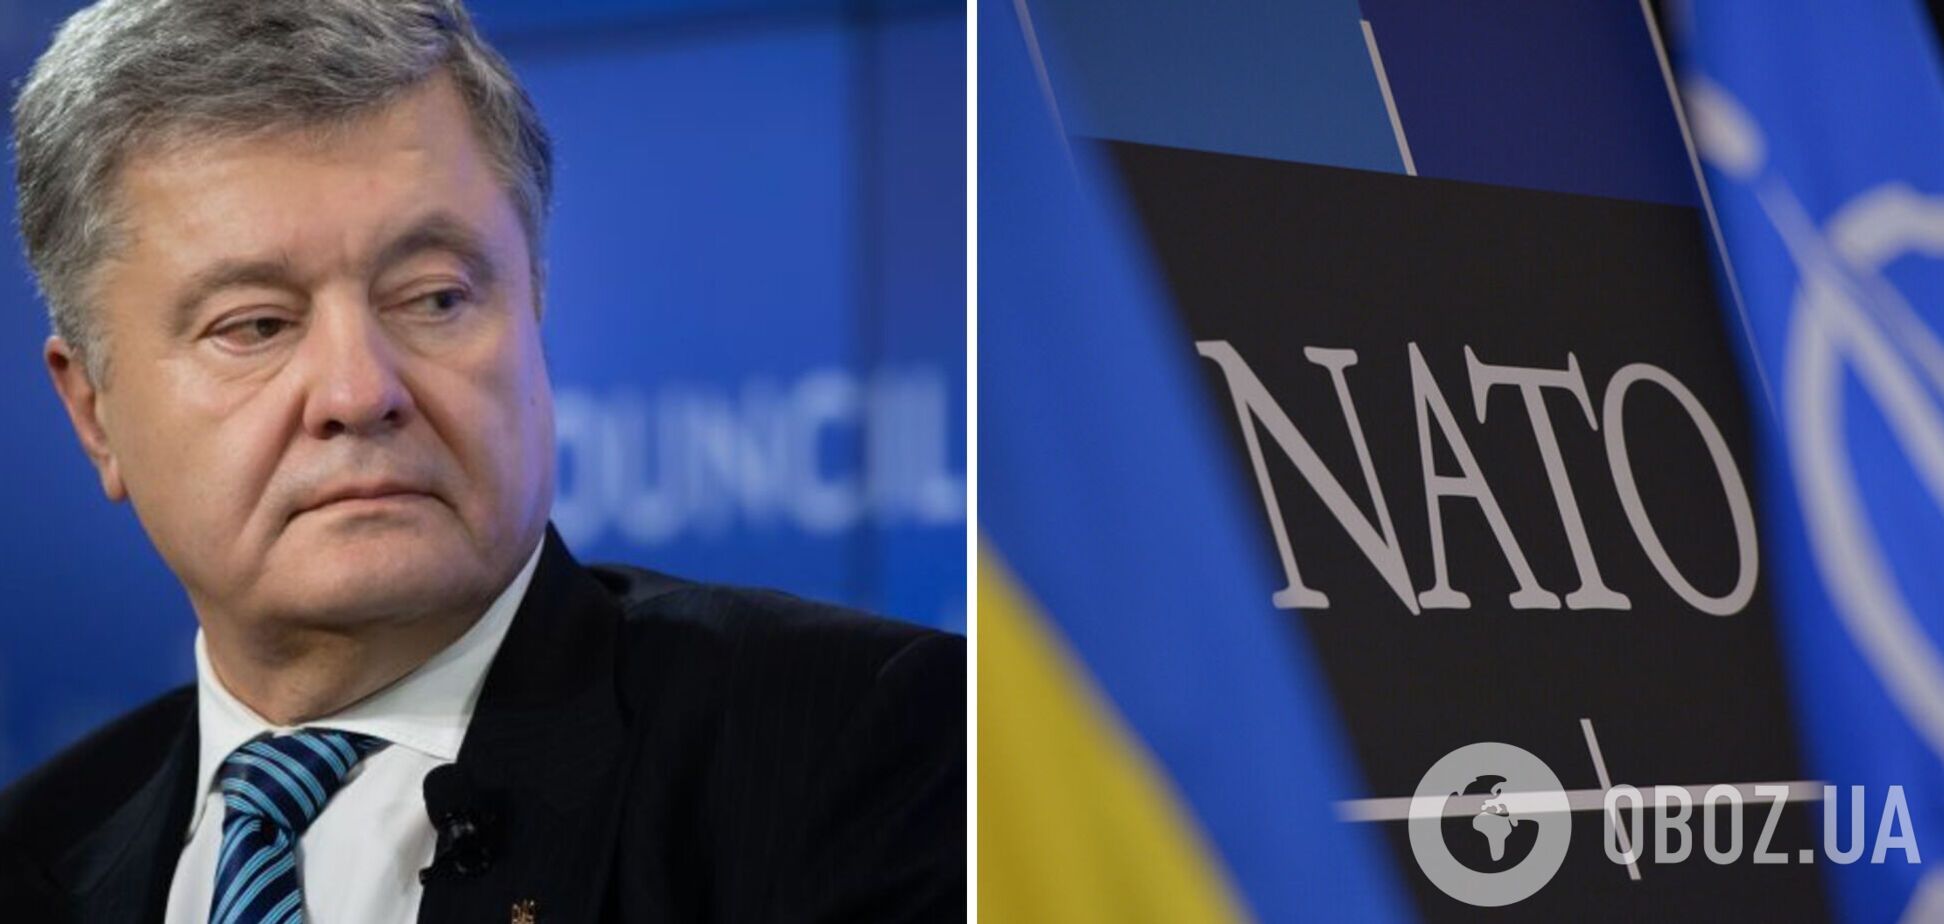 Порошенко: приглашение в НАТО – это не подарок Украине, а инвестиция в безопасность Альянса